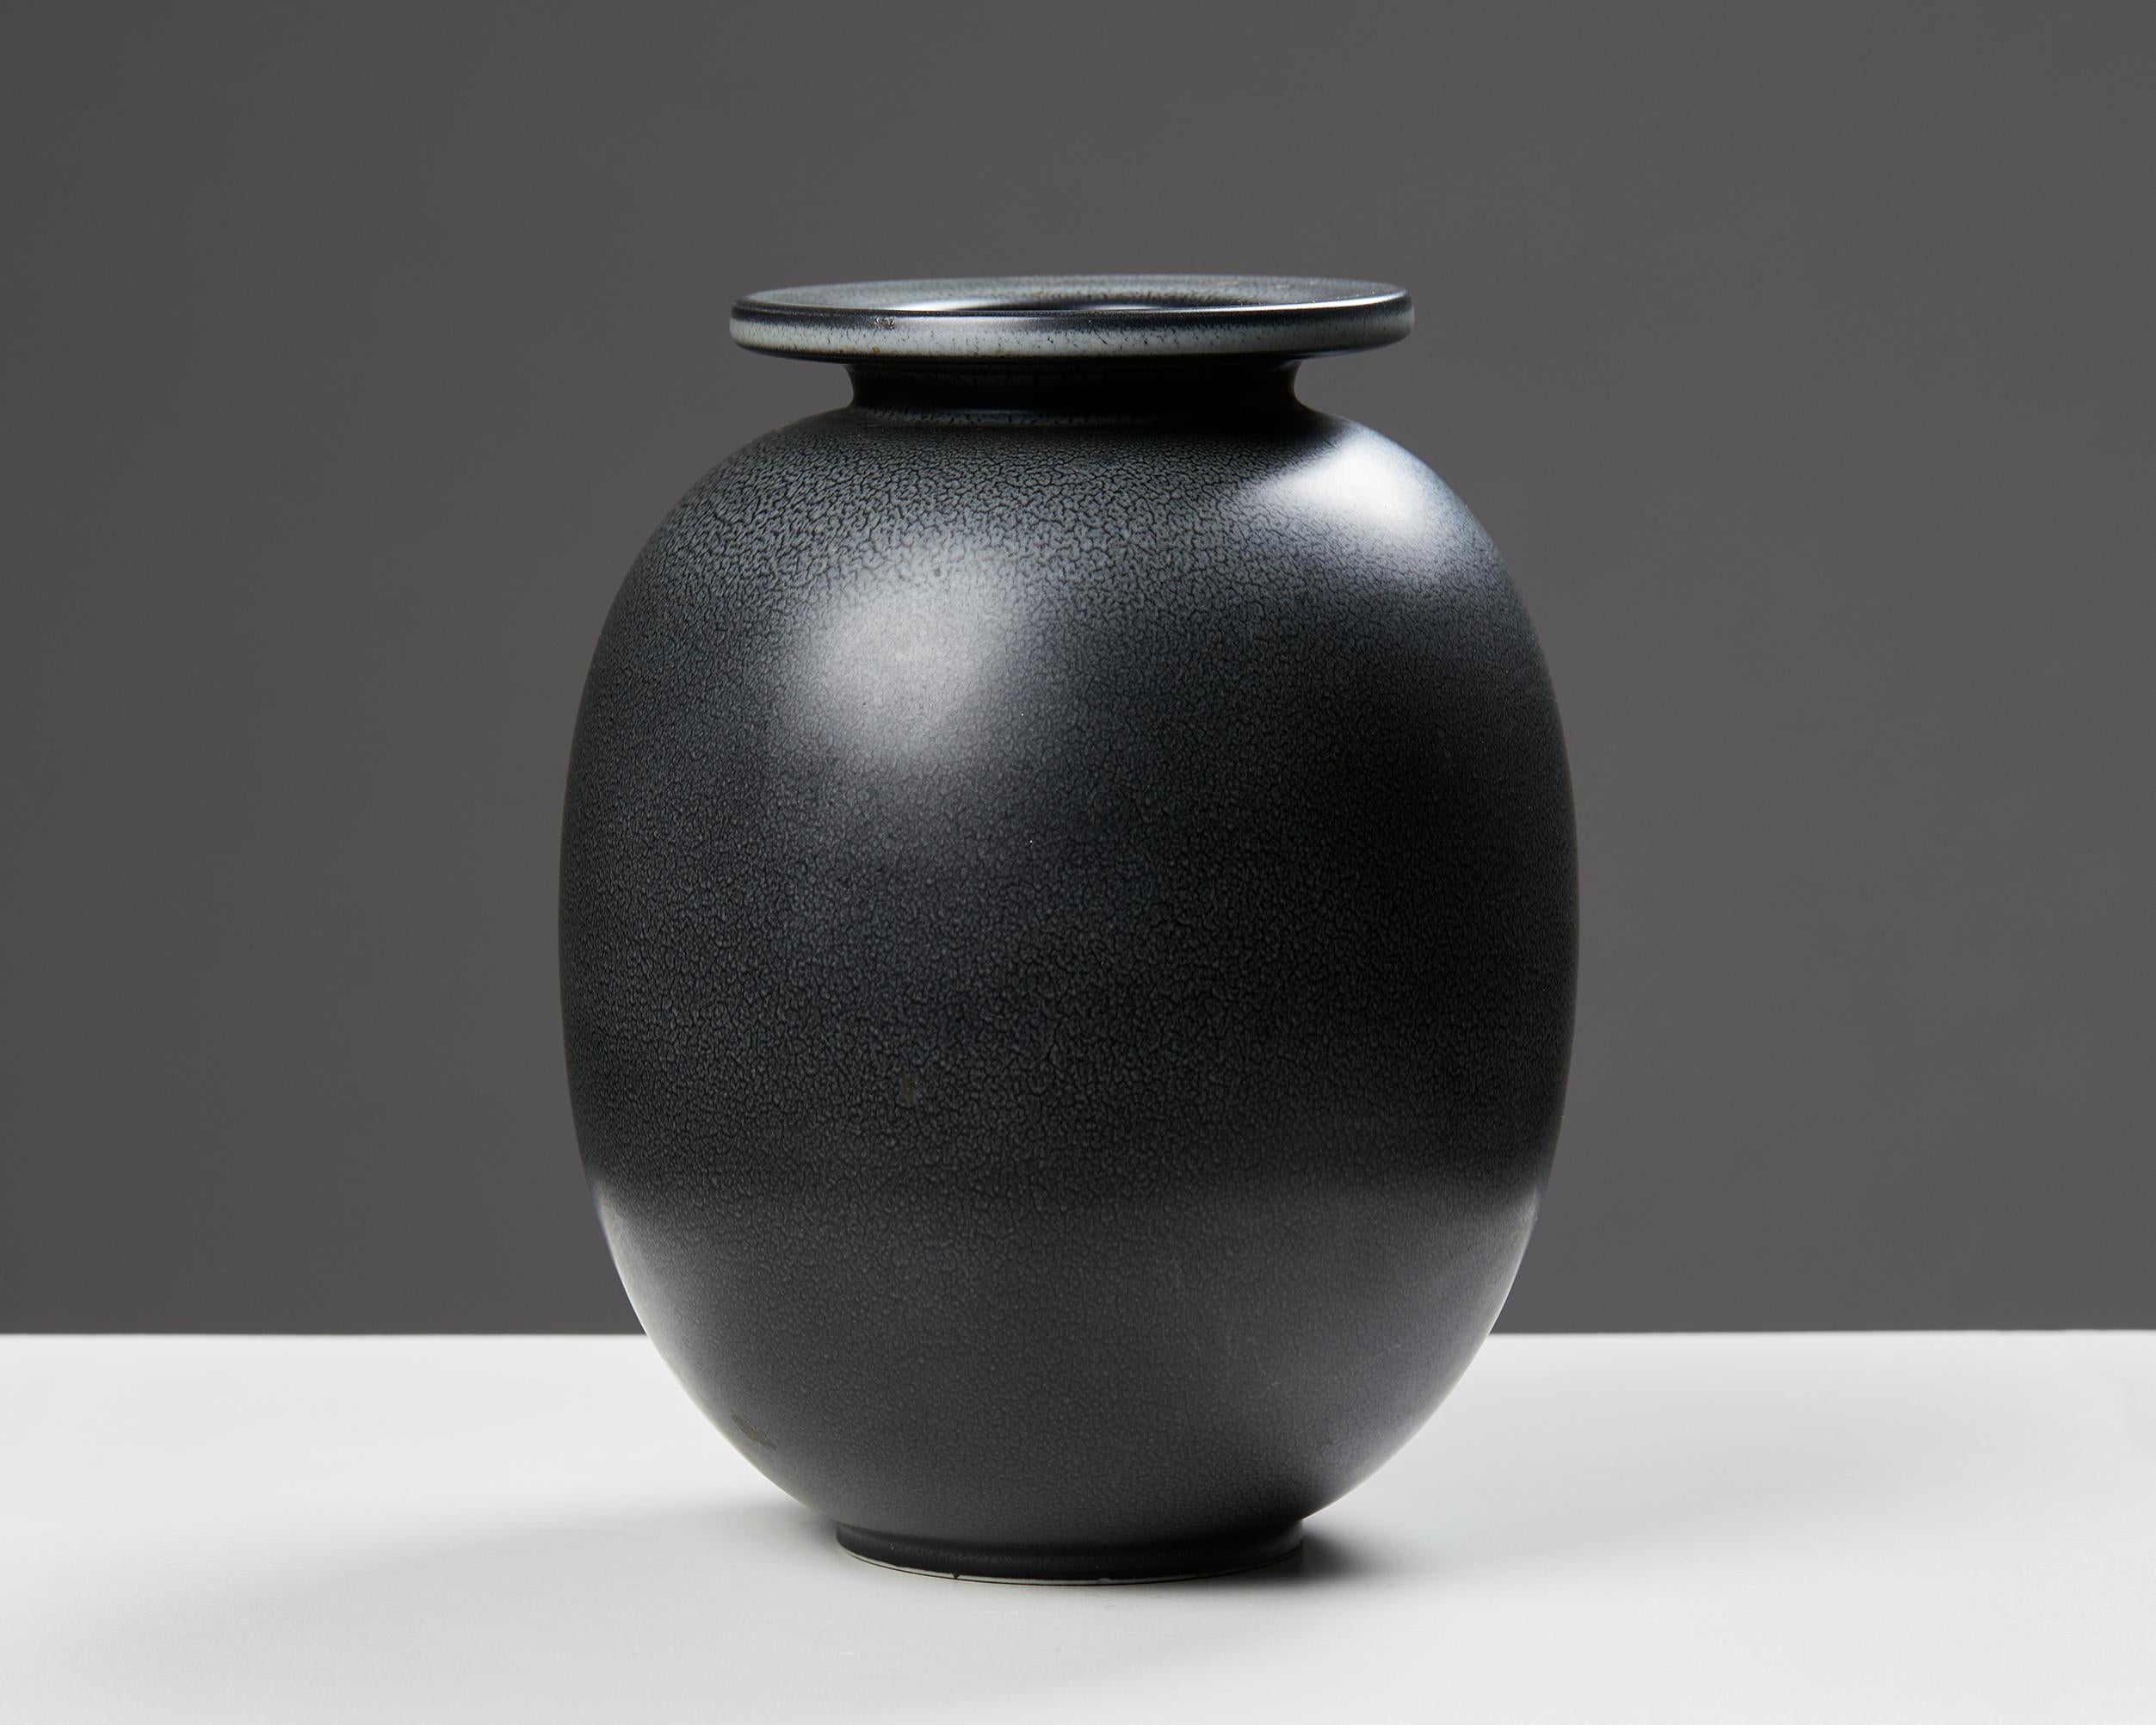 Vase designed by Gunnar Nylund for Rörstrand,
Sweden, 1950s.
Stoneware.

Signed.

Measures: H: 20.5 cm / 8”
Diameter: 16.5 cm / 6 1/2